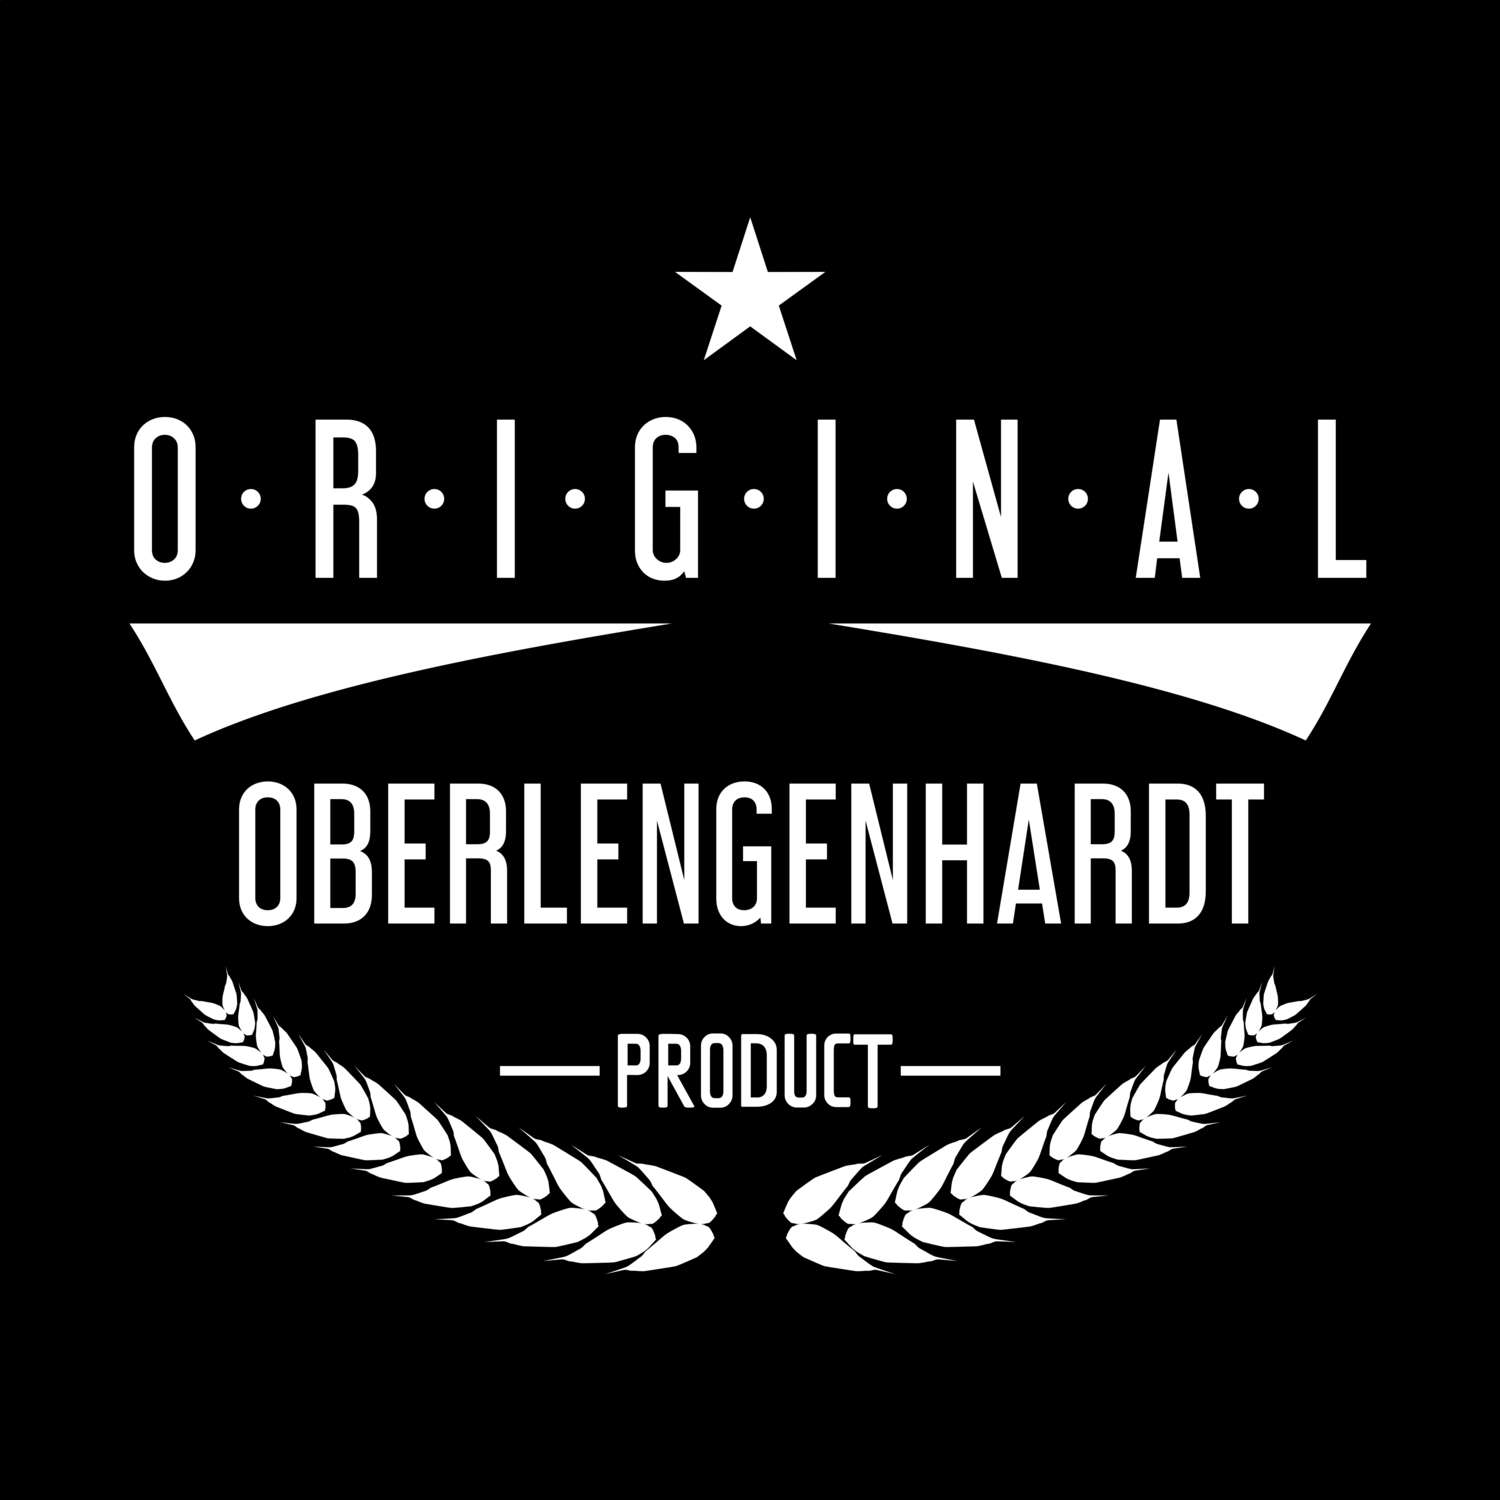 Oberlengenhardt T-Shirt »Original Product«